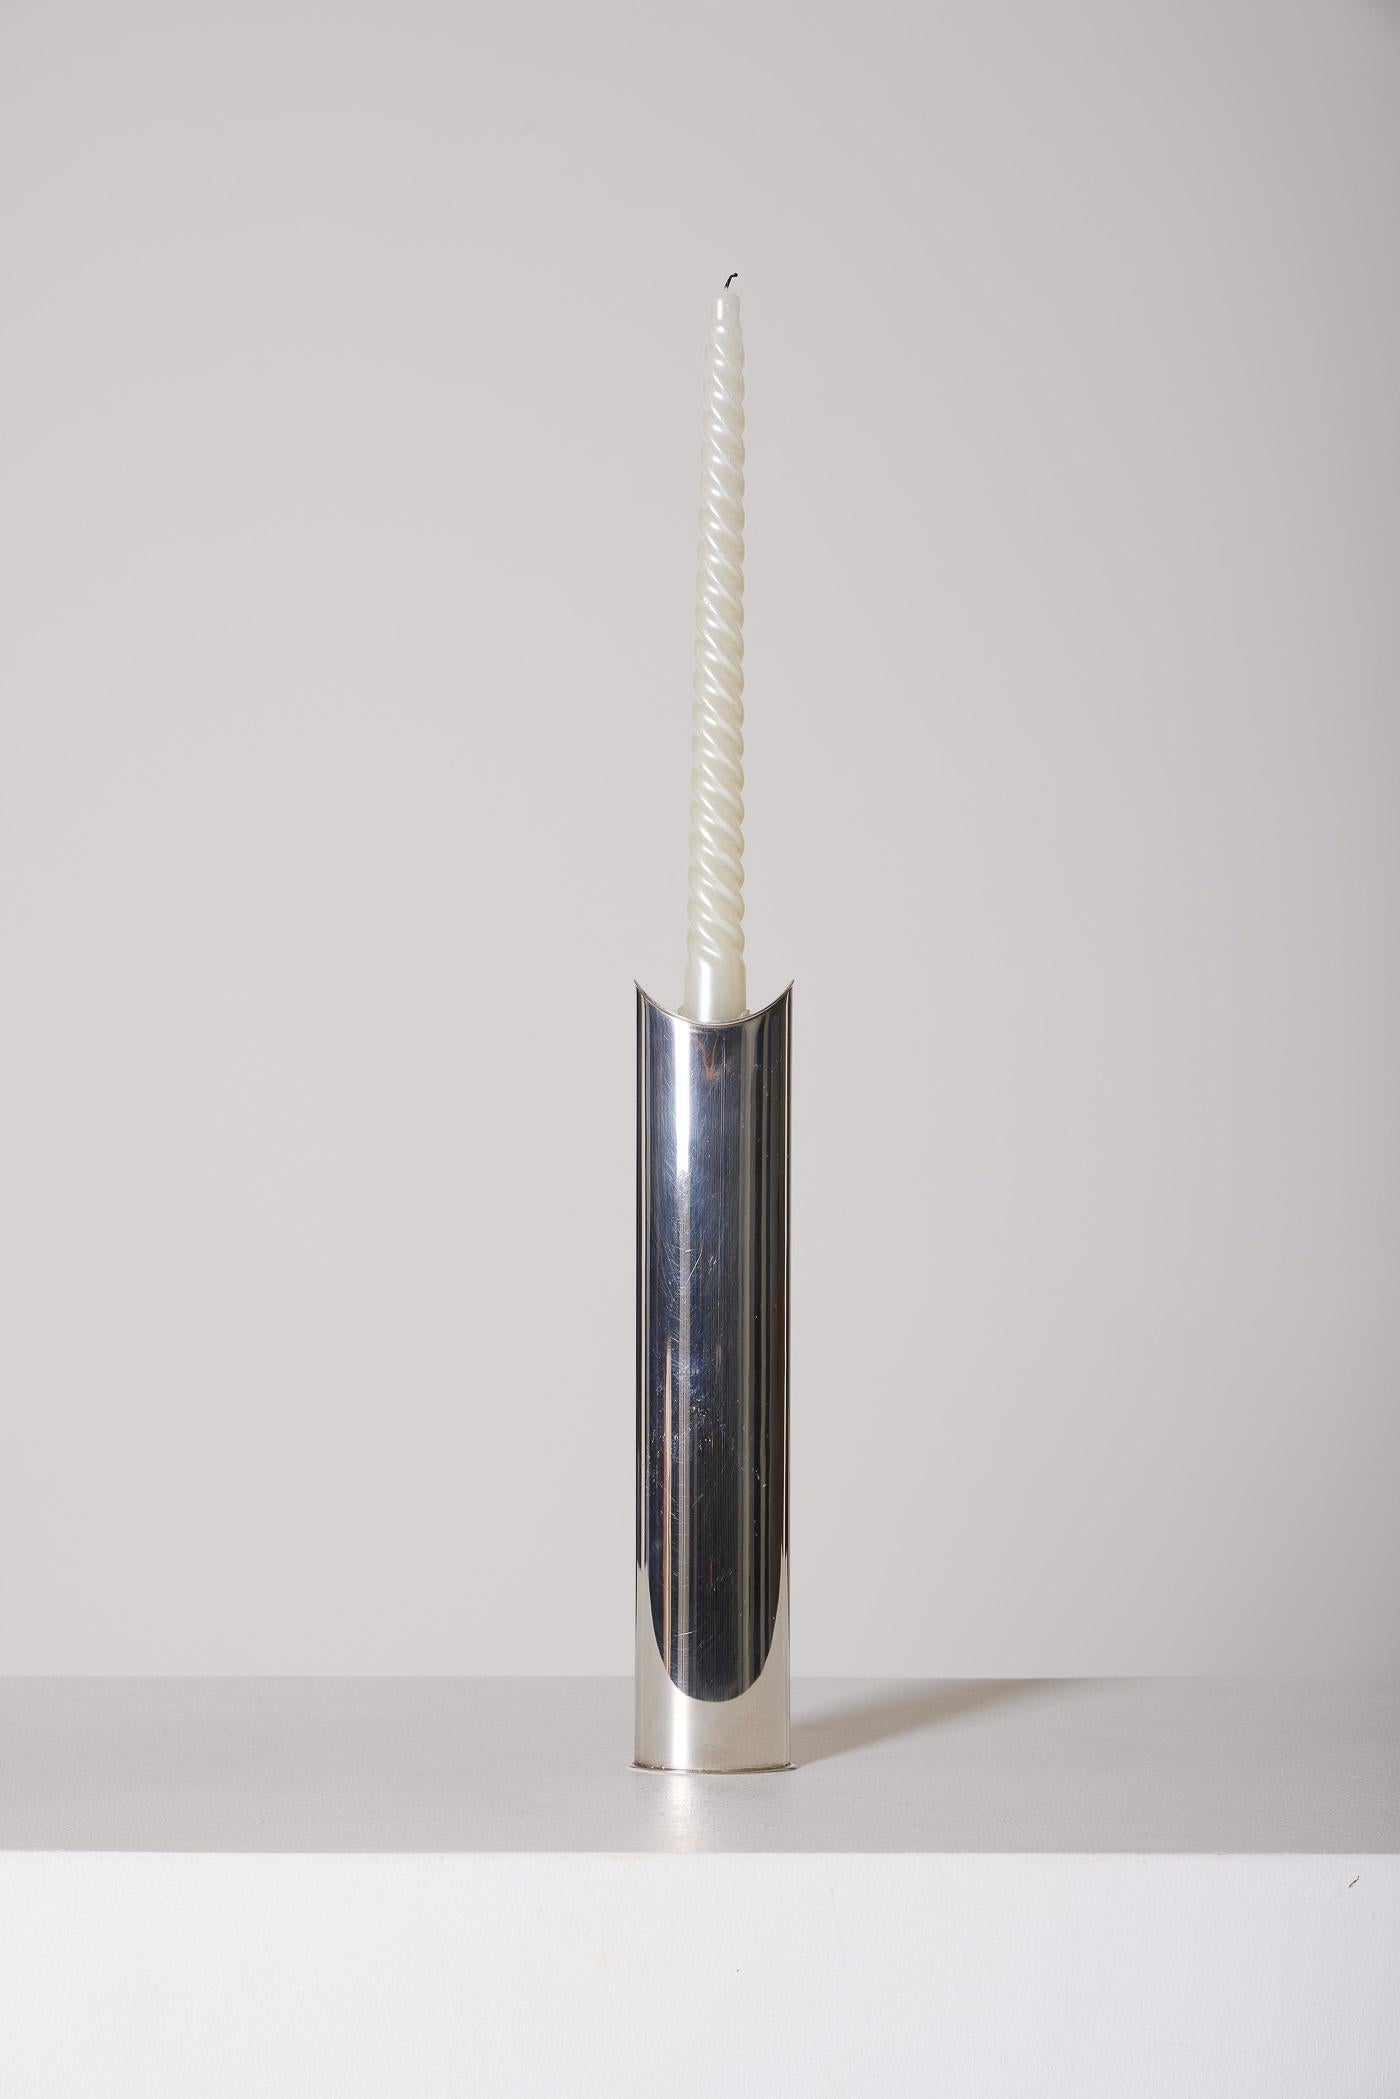 Vase Giselle en métal argenté conçu par le designer italien Lino Sabattini, 1970. Signé sous la base. Lino Sabattini devient directeur du design du prestigieux orfèvre français Christofle. En parfait état.
LP2589